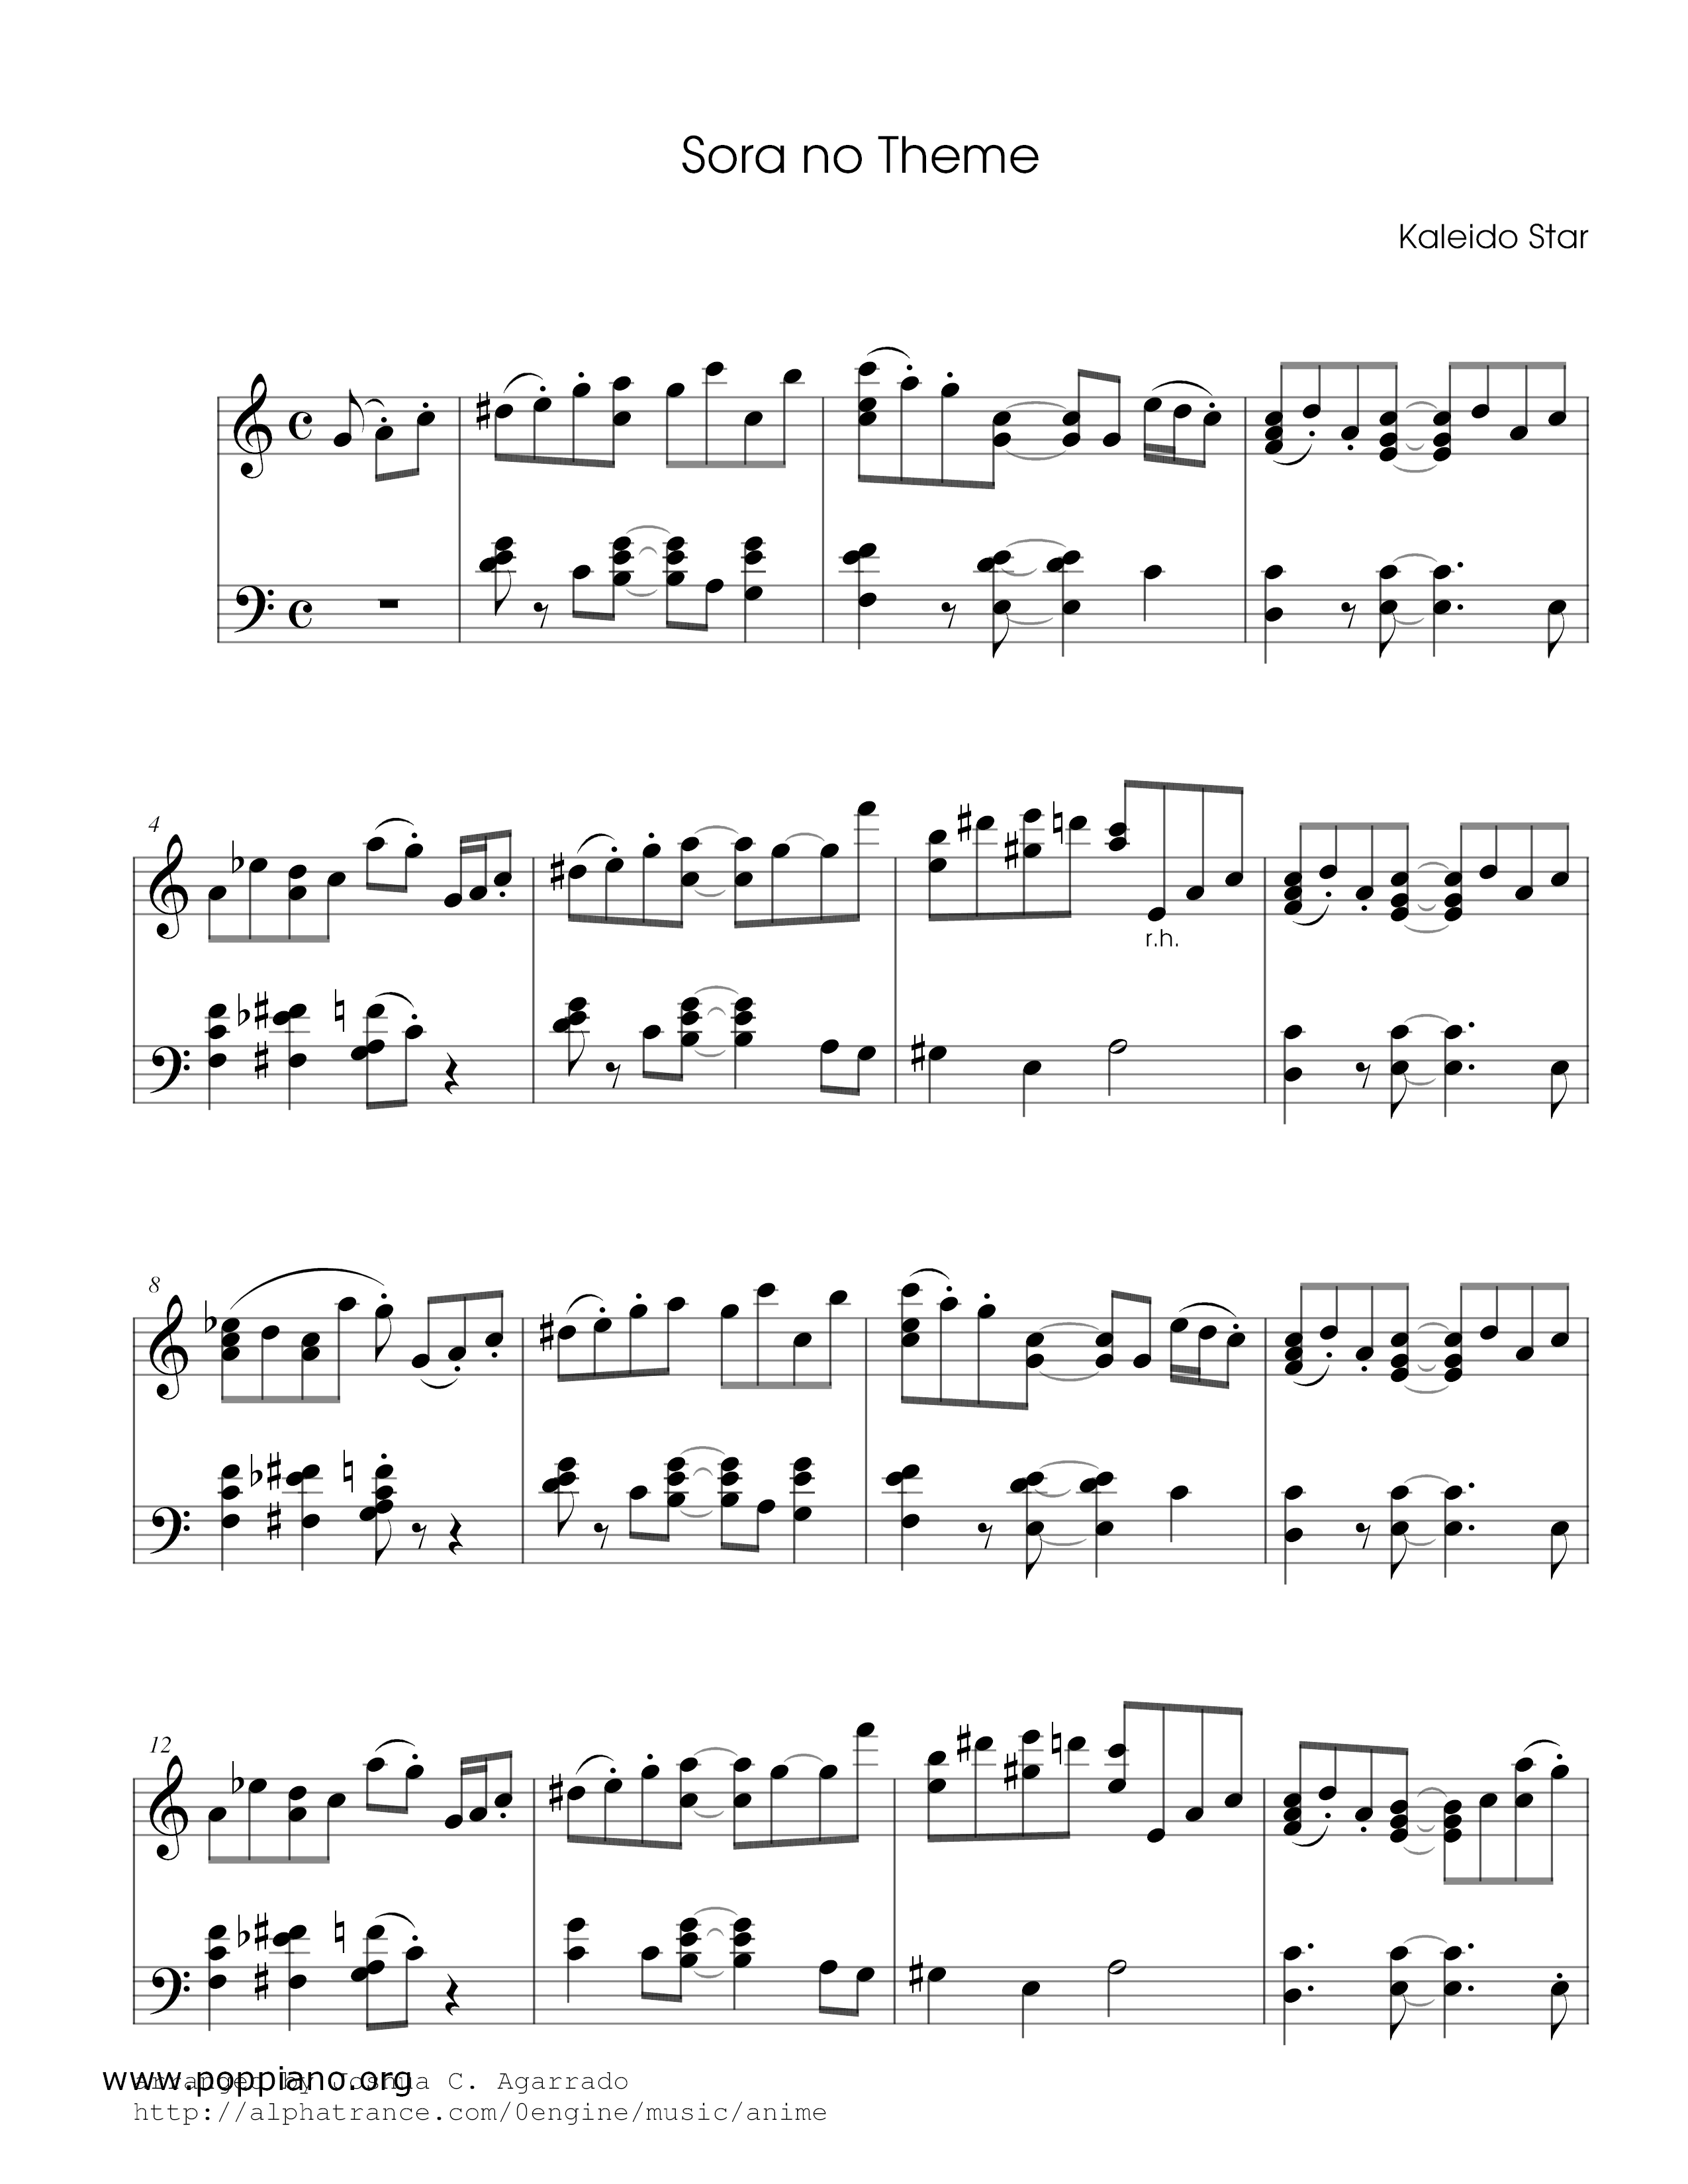 Sora's Theme [Kaleido Star]ピアノ譜